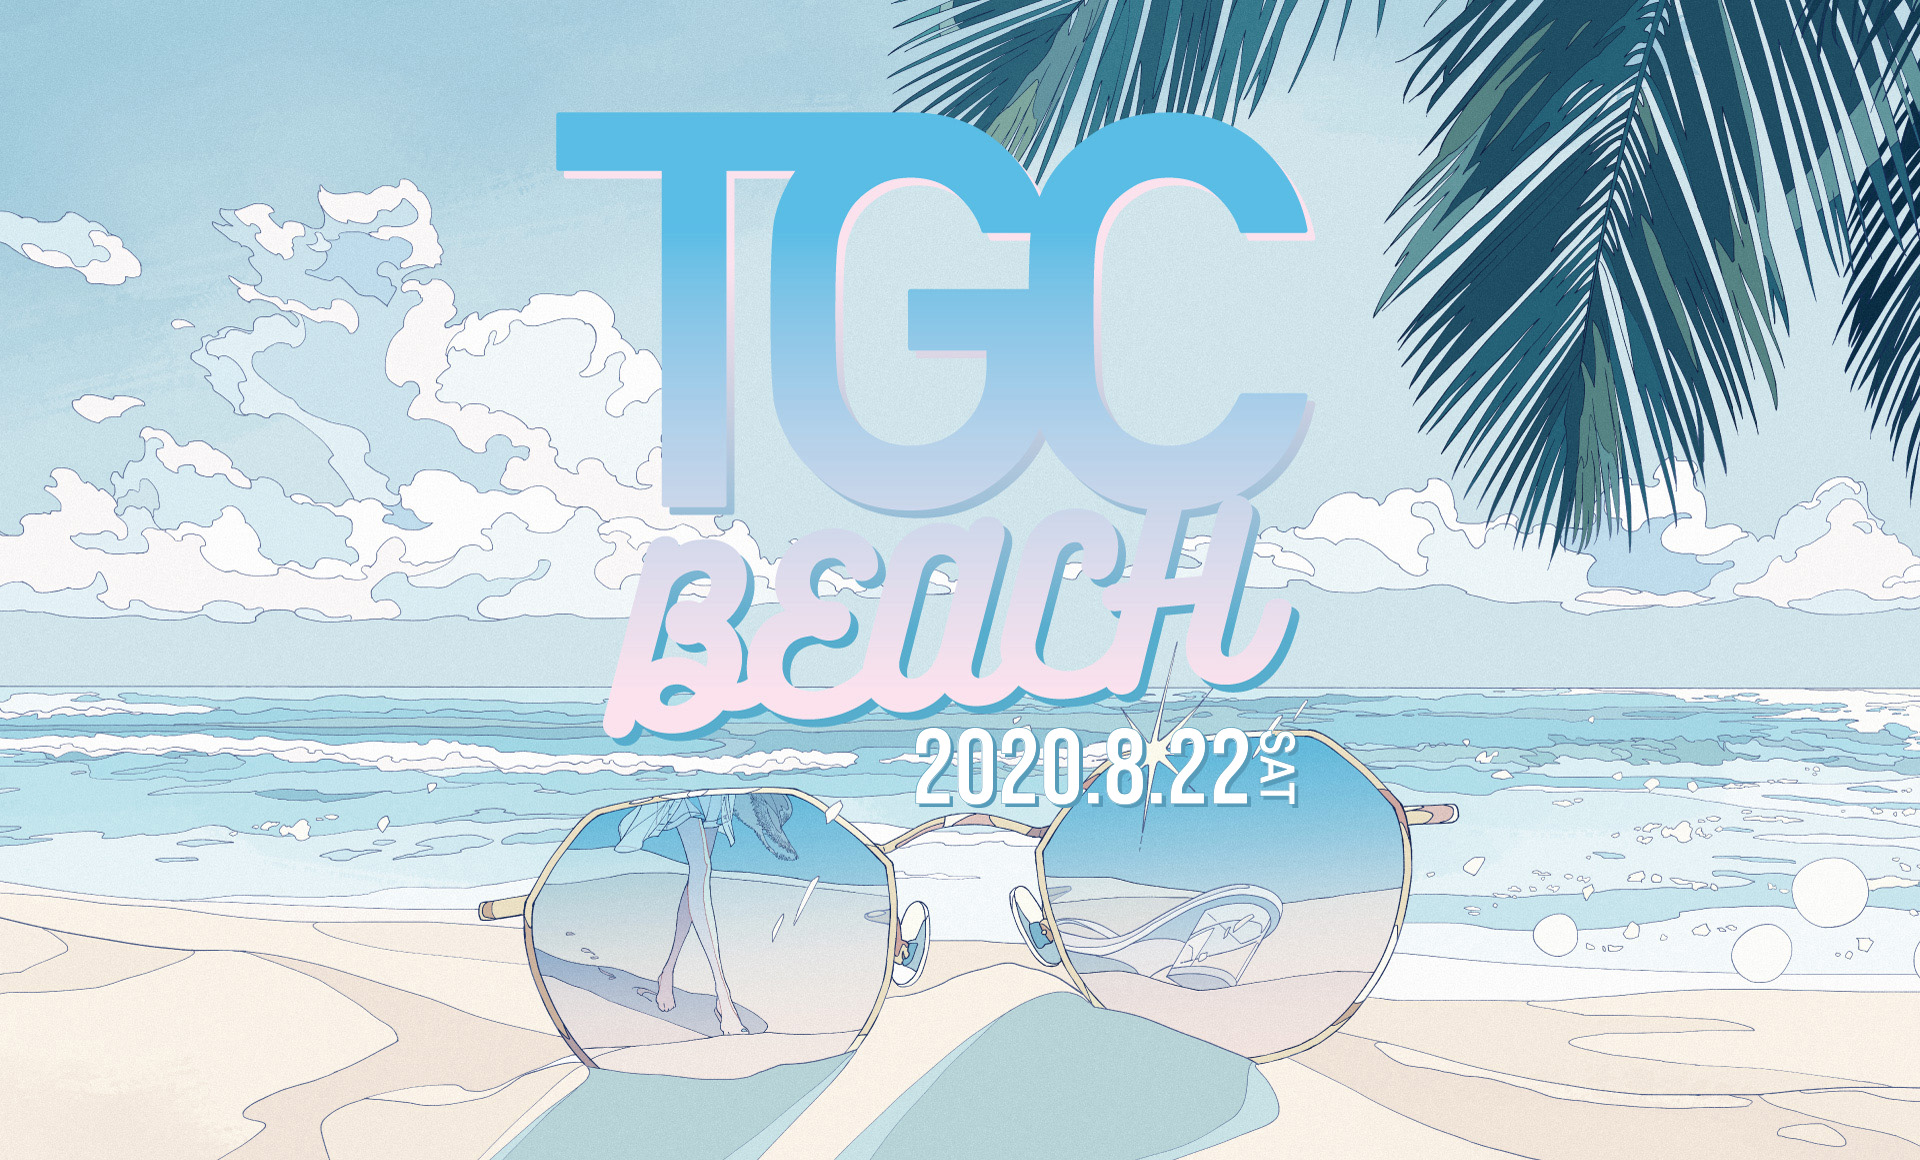 TGC BEACH 2020